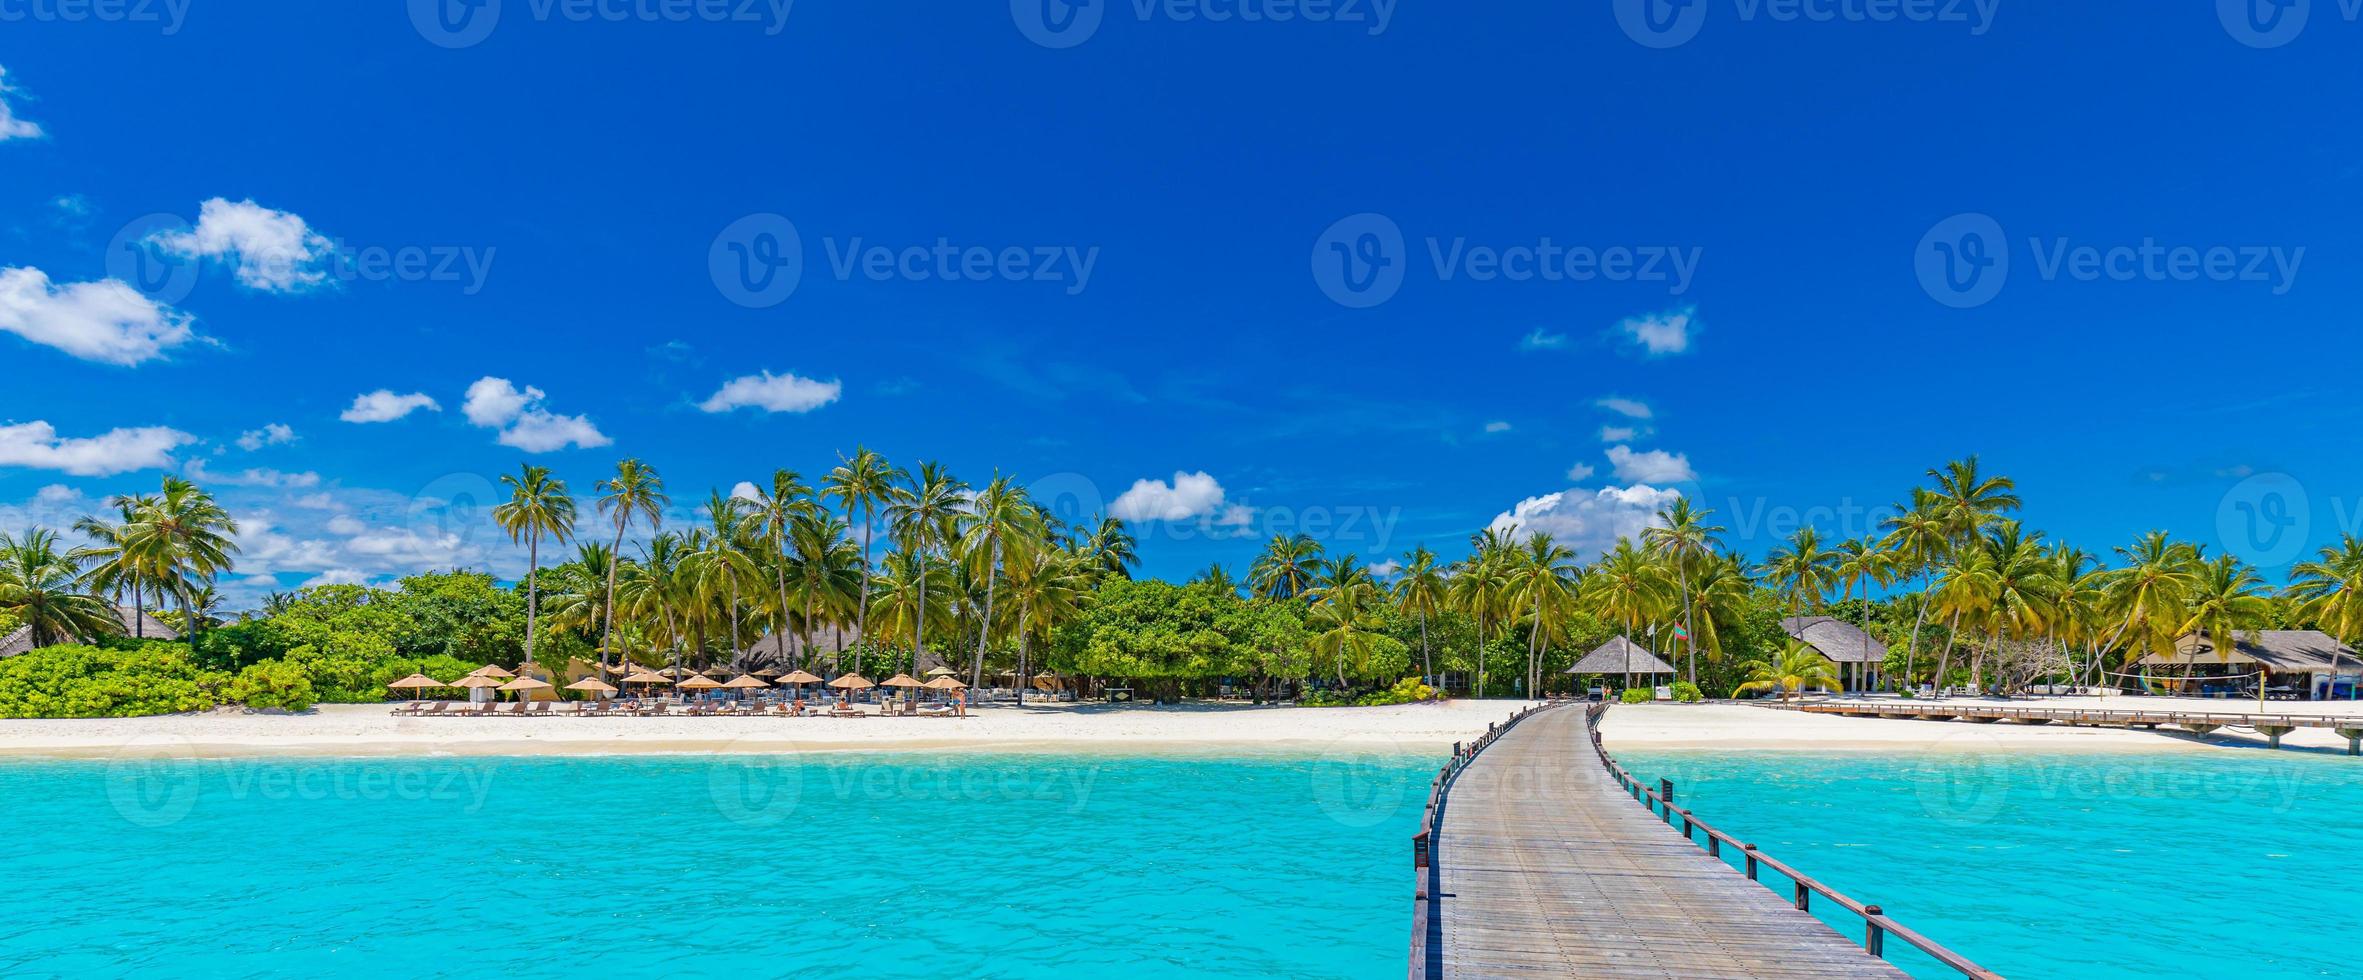 incredibile panorama alle maldive. ville resort di lusso vista sul mare con palme, sabbia bianca e cielo blu. bellissimo paesaggio estivo. incredibile sfondo della spiaggia per le vacanze. concetto di isola paradisiaca foto